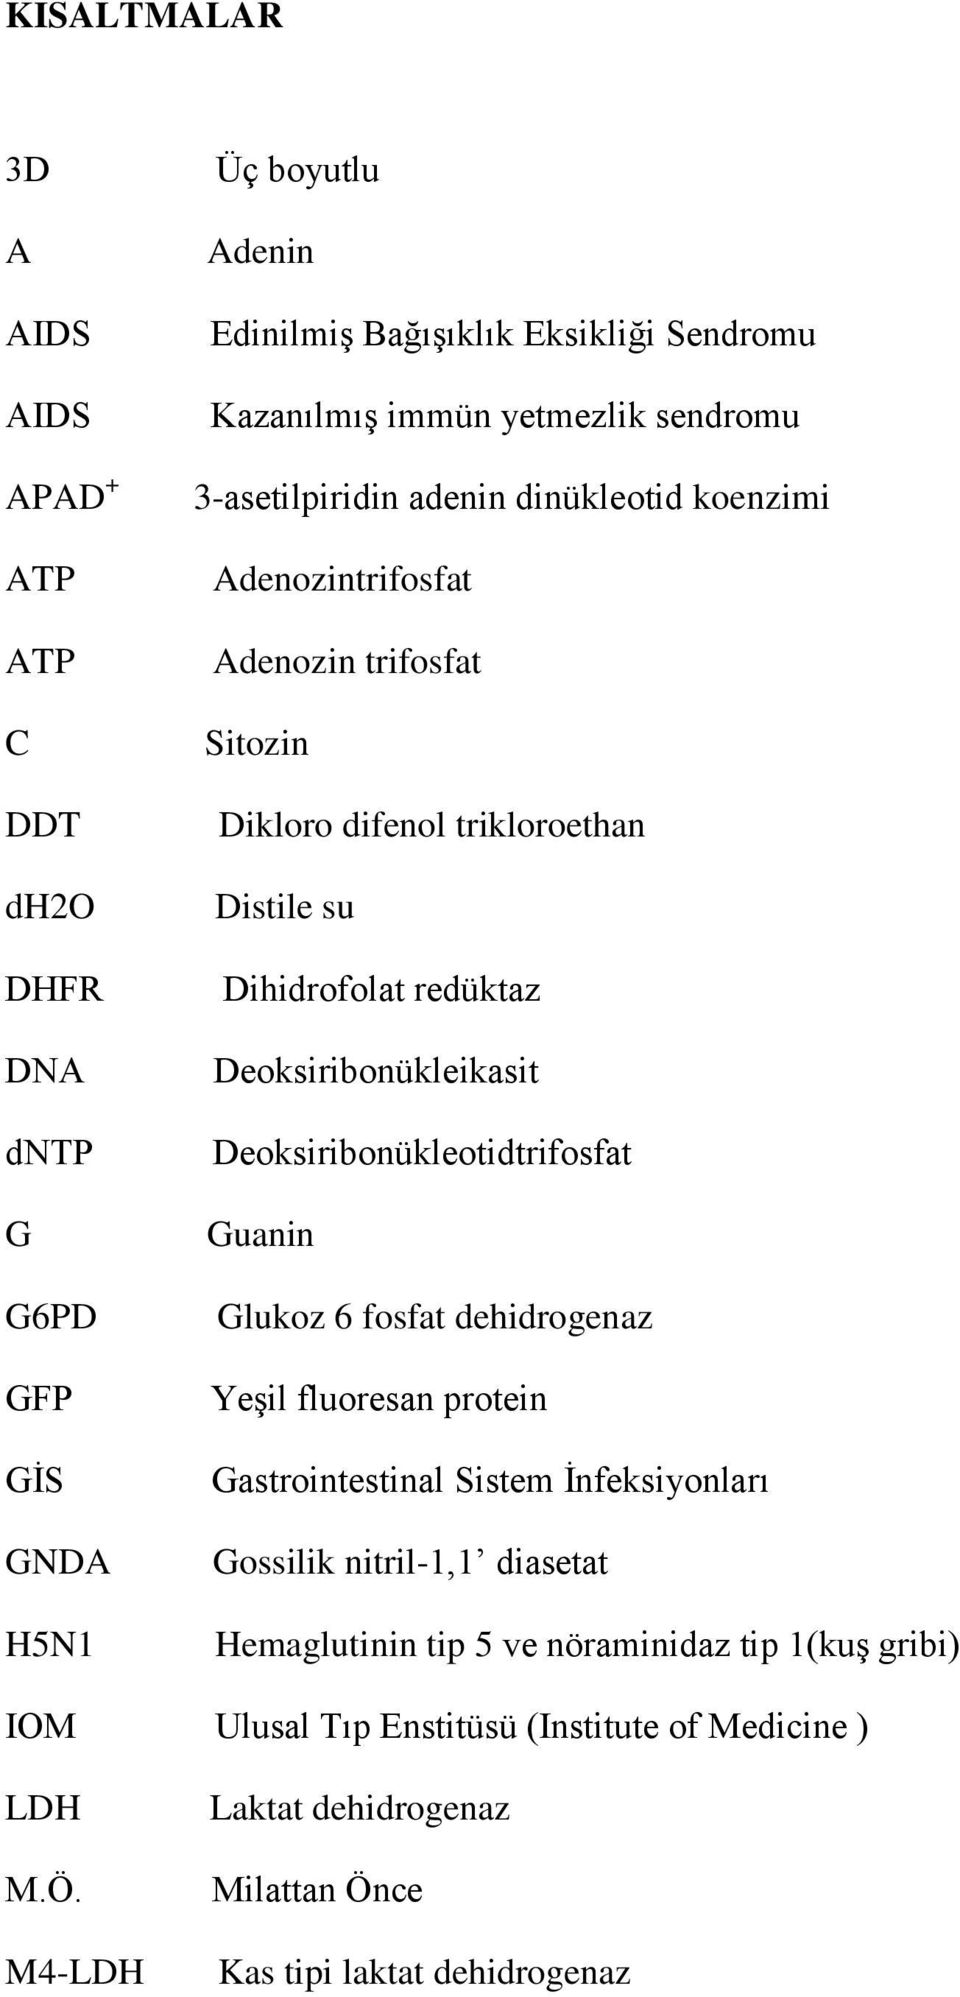 Deoksiribonükleikasit Deoksiribonükleotidtrifosfat Guanin Glukoz 6 fosfat dehidrogenaz Yeşil fluoresan protein Gastrointestinal Sistem İnfeksiyonları Gossilik nitril-1,1